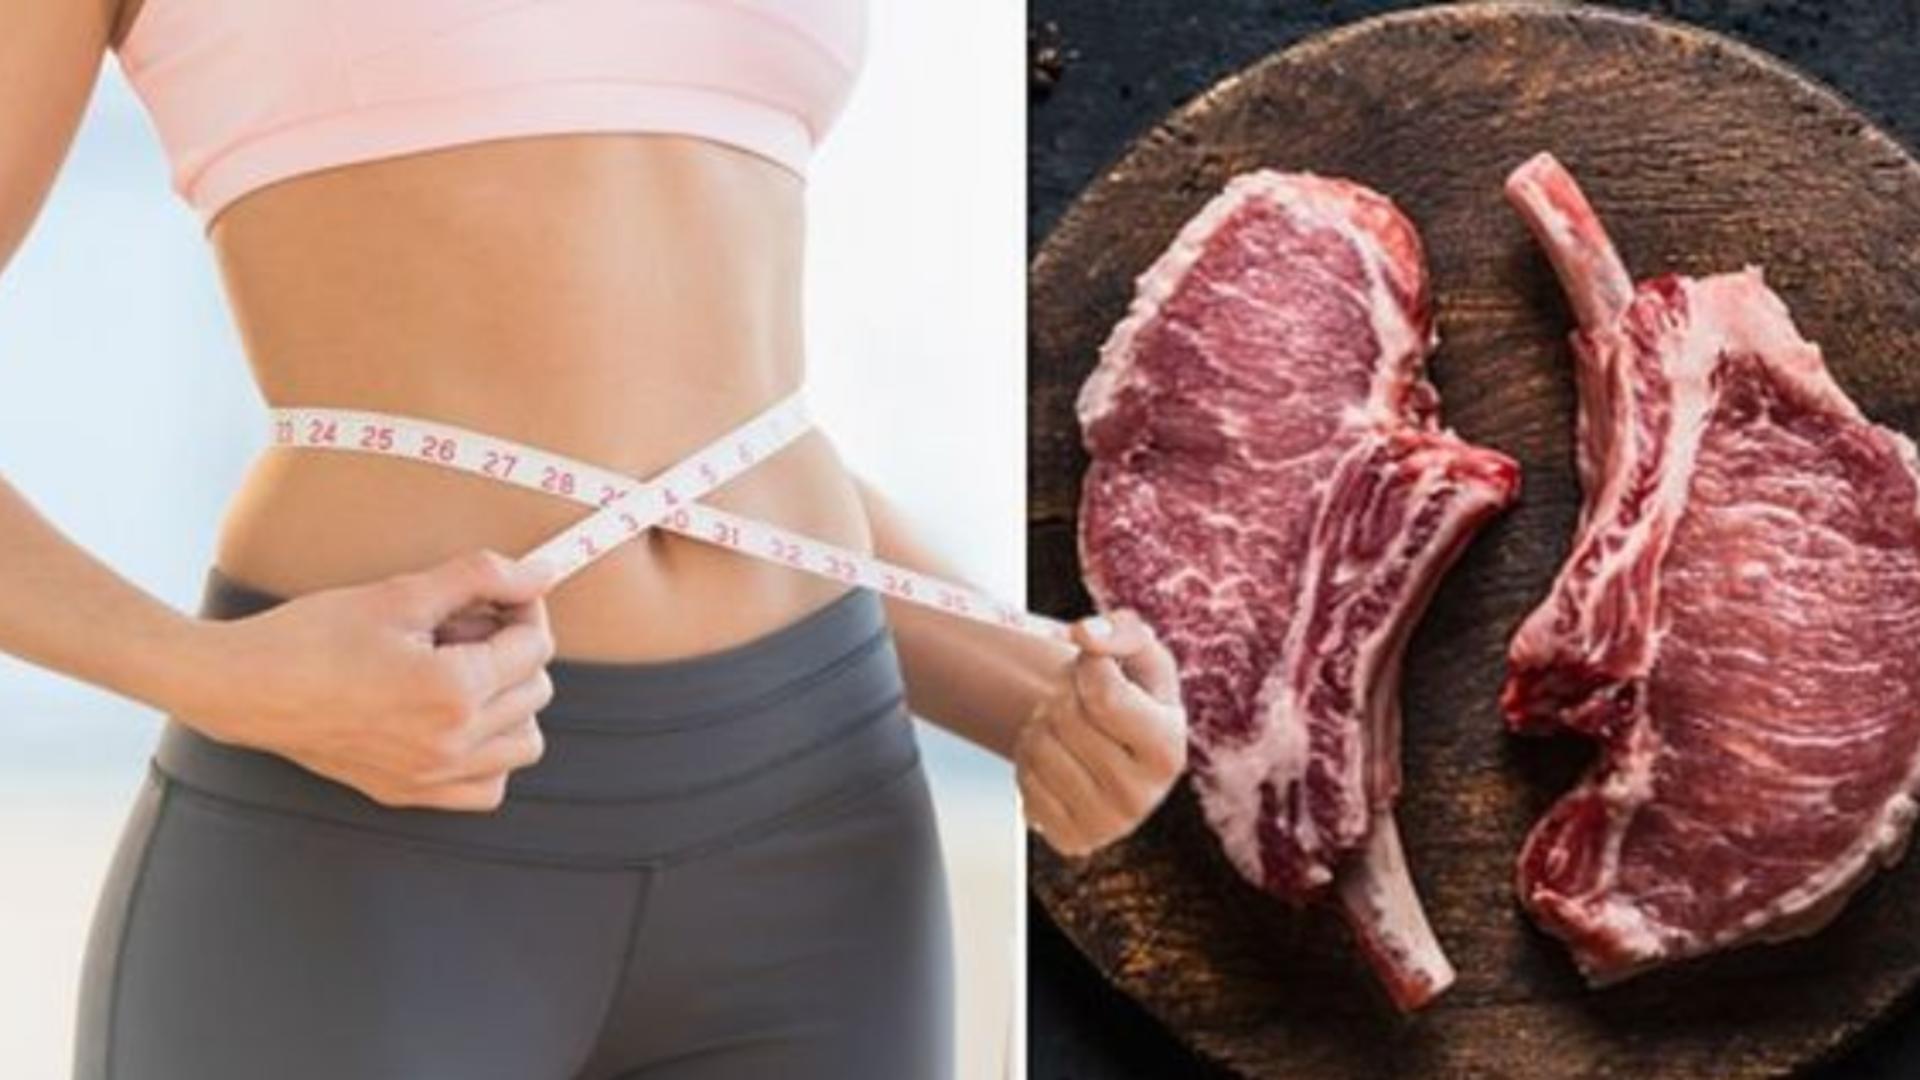 PERICOLUL din dietele rapide de sărbători - 8 sfaturi pentru a scăpa eficient de kilogramele în plus - Cel mai sănătos regim